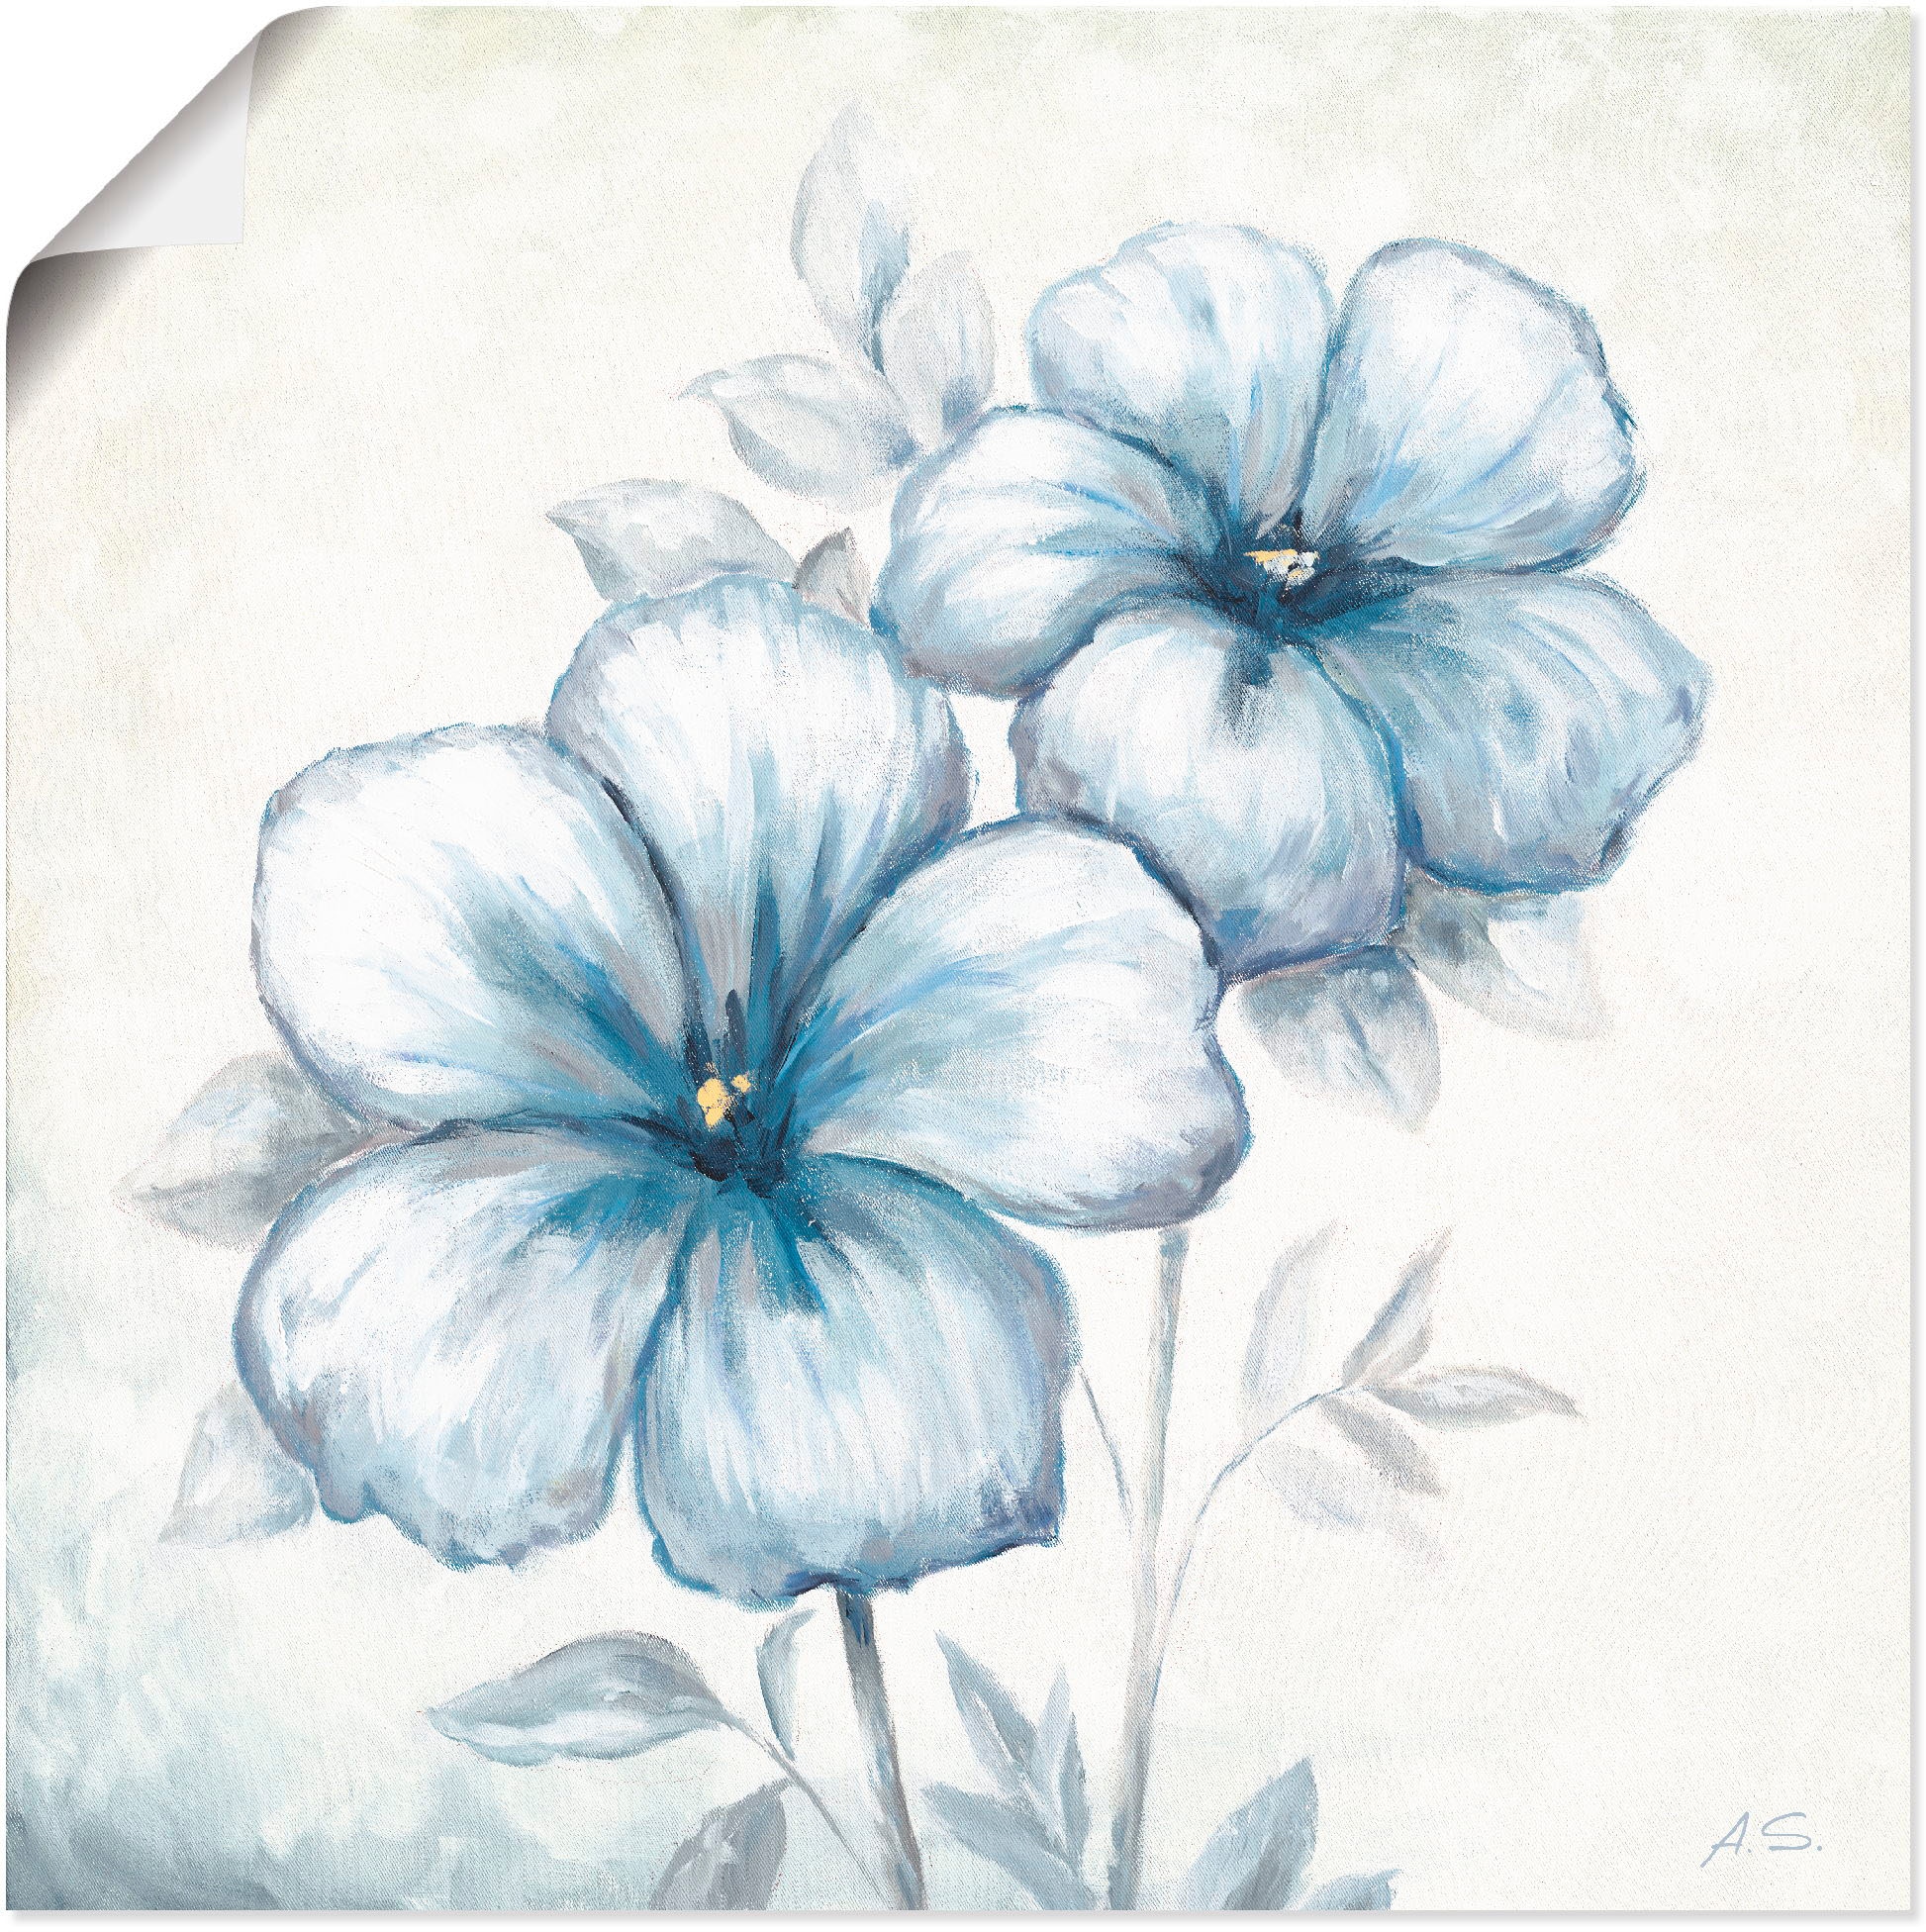 Artland Paveikslas »Blauer Mohn« Blumen (1 St....